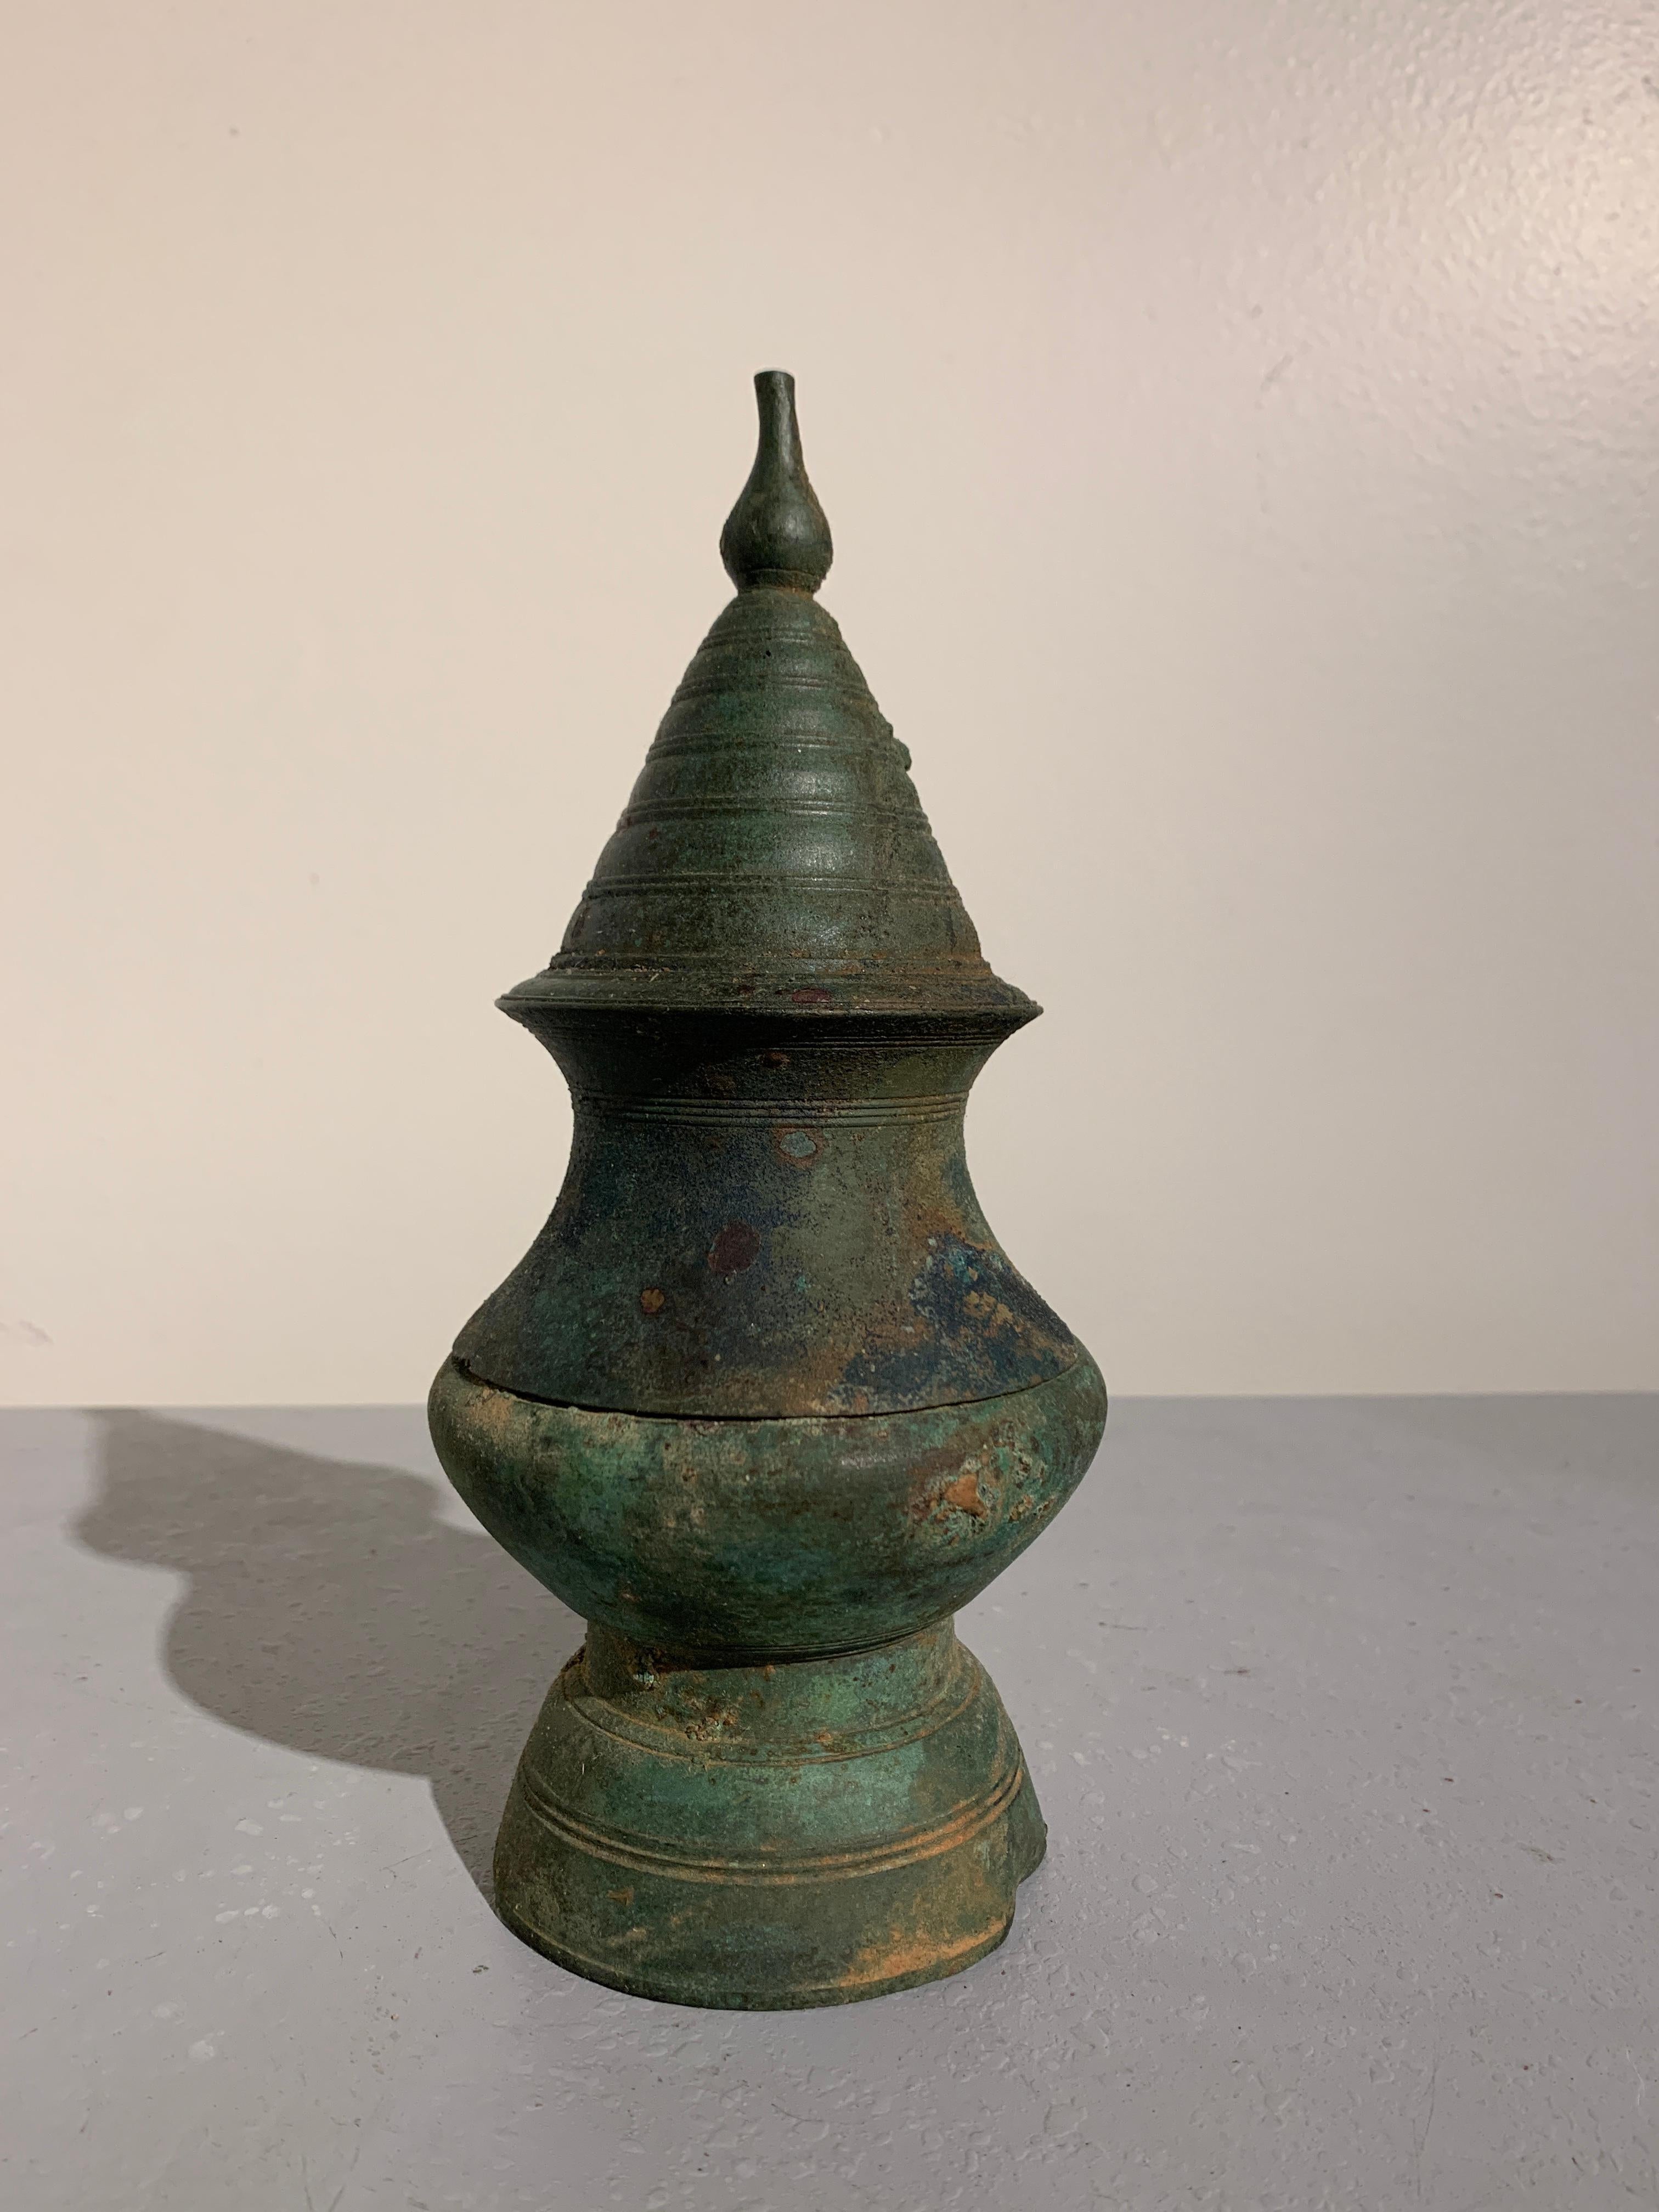 Un pot à chaux en bronze khmer de taille inhabituelle en forme de stupa:: période d'Angkor:: XIIe-XIVe siècle::

Le récipient:: utilisé pour contenir de la chaux éteinte (hydroxyde de calcium) en poudre:: un ingrédient essentiel utilisé dans la